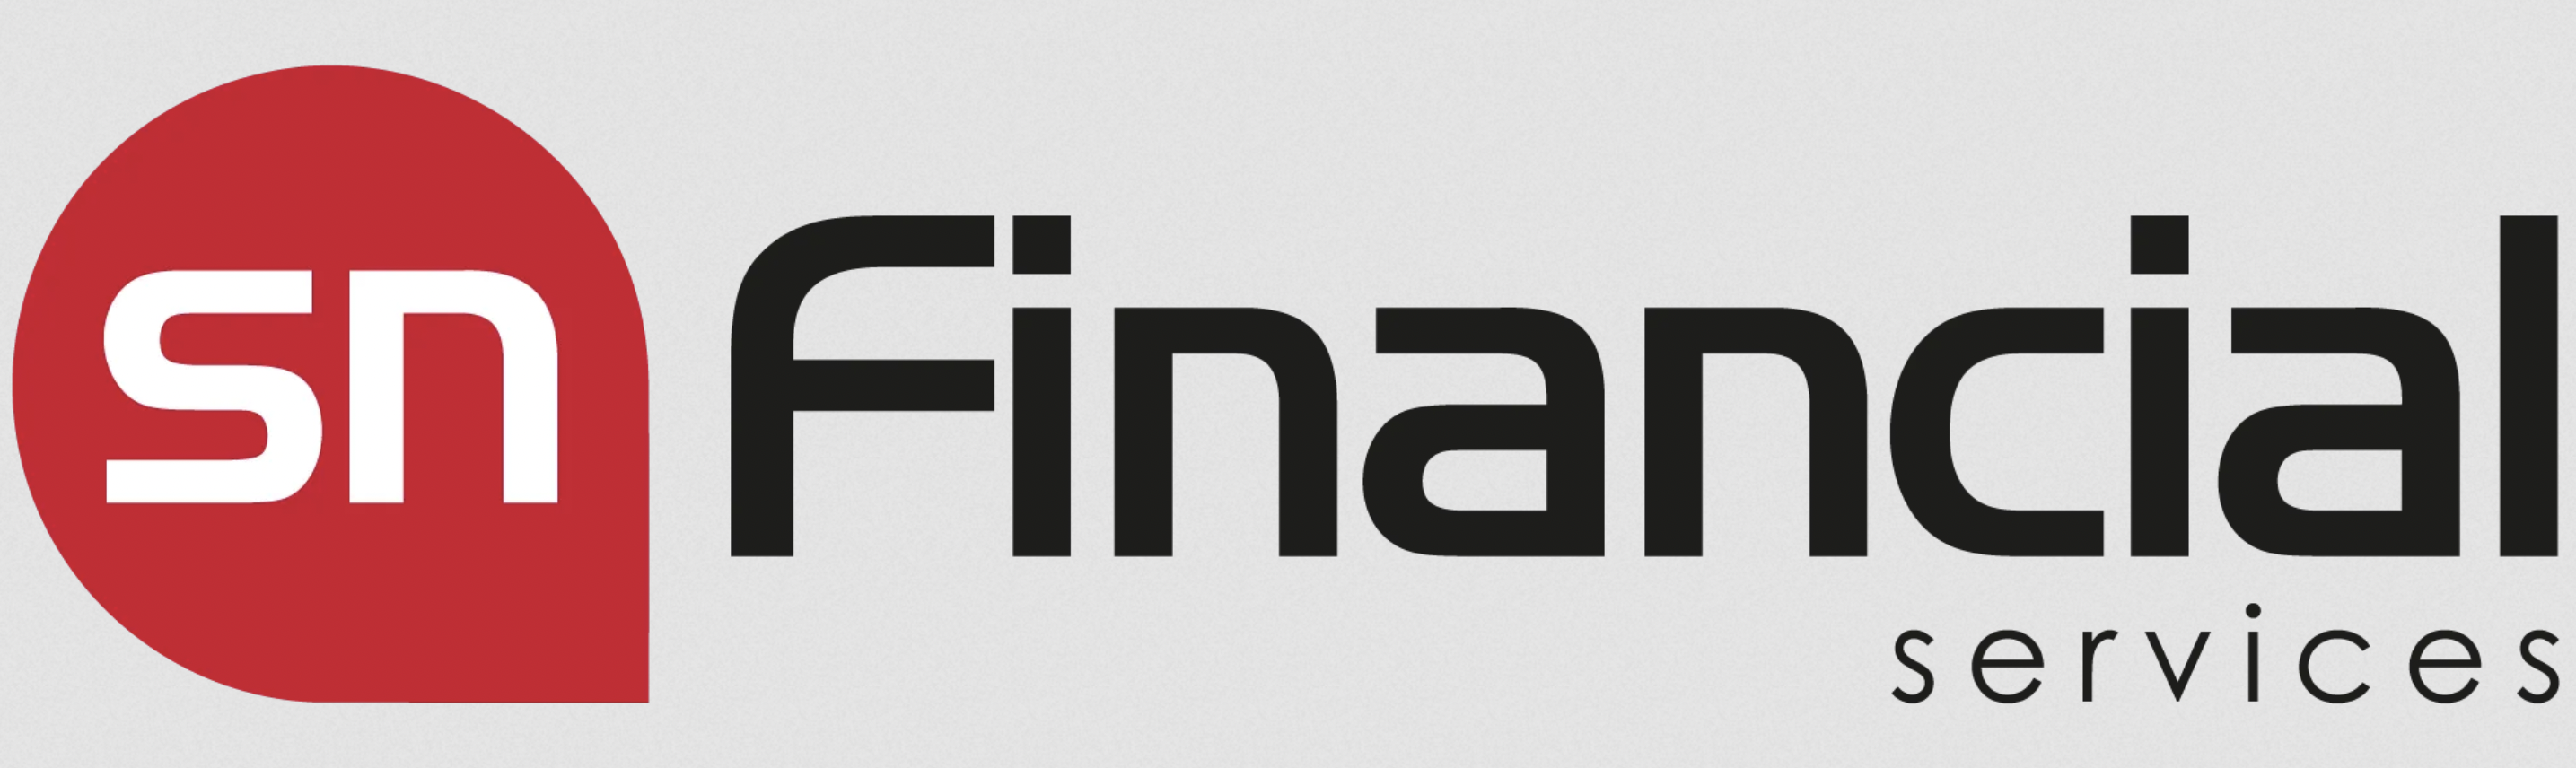 SN Financial Services logo